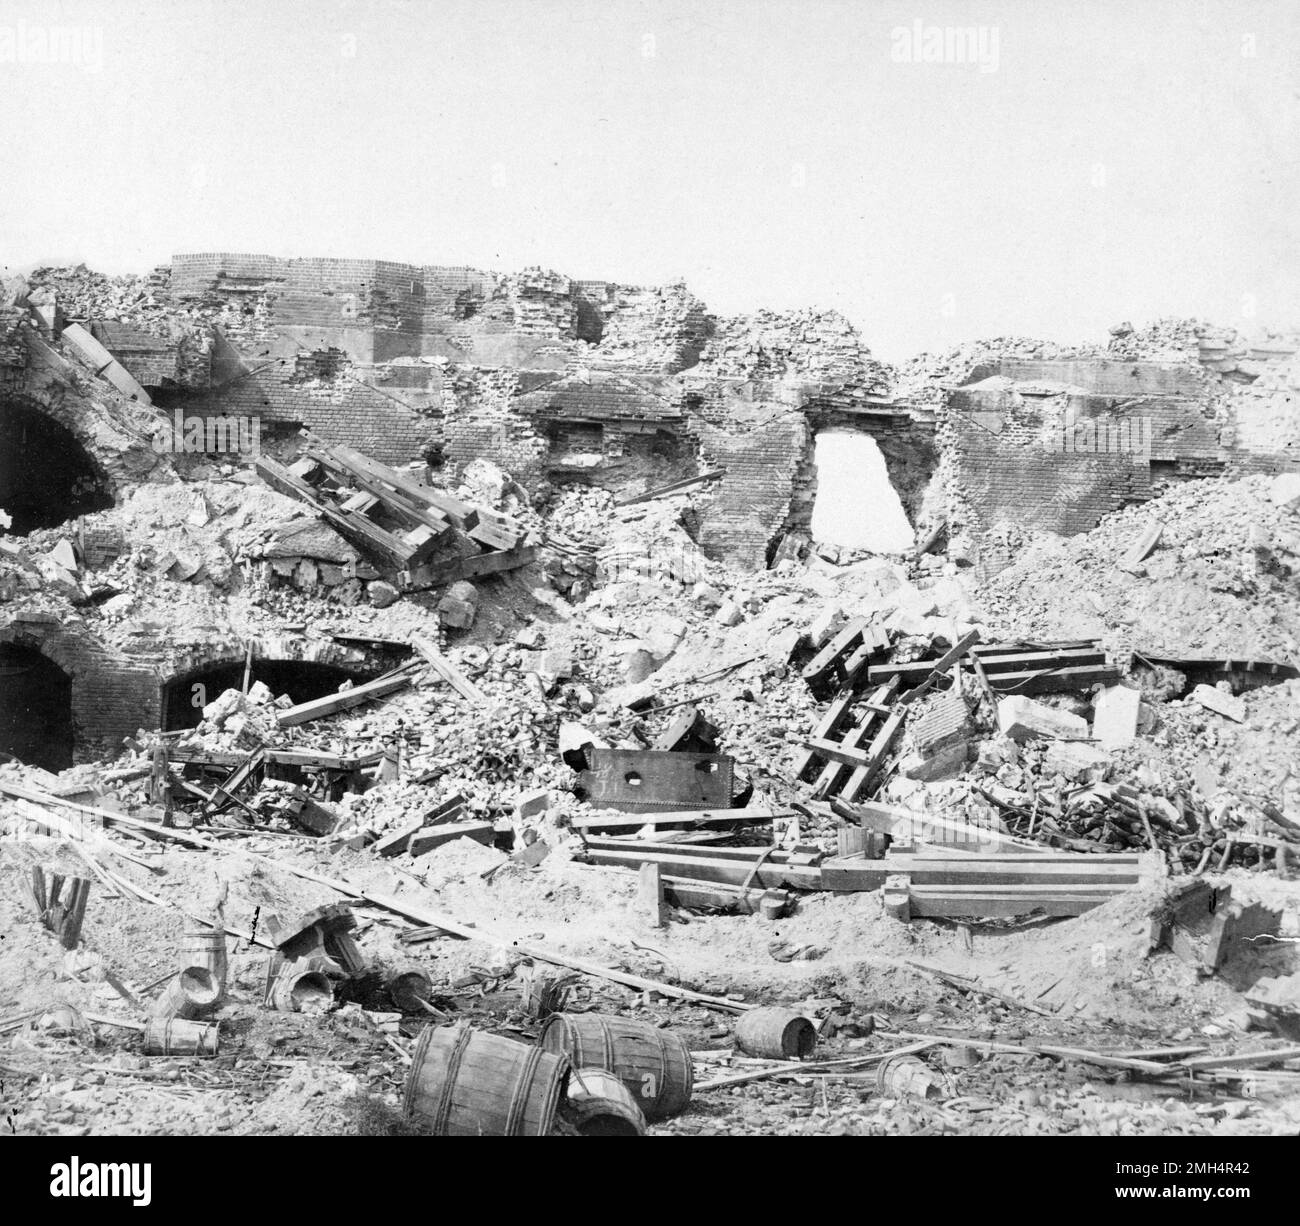 Les ruines de fort Sumter After sont capturées par l'armée confédérée. Le bombardement et la capture du fort Sumter par les confédérés ont été la bataille d'ouverture de la guerre américaine de Ciil. Banque D'Images